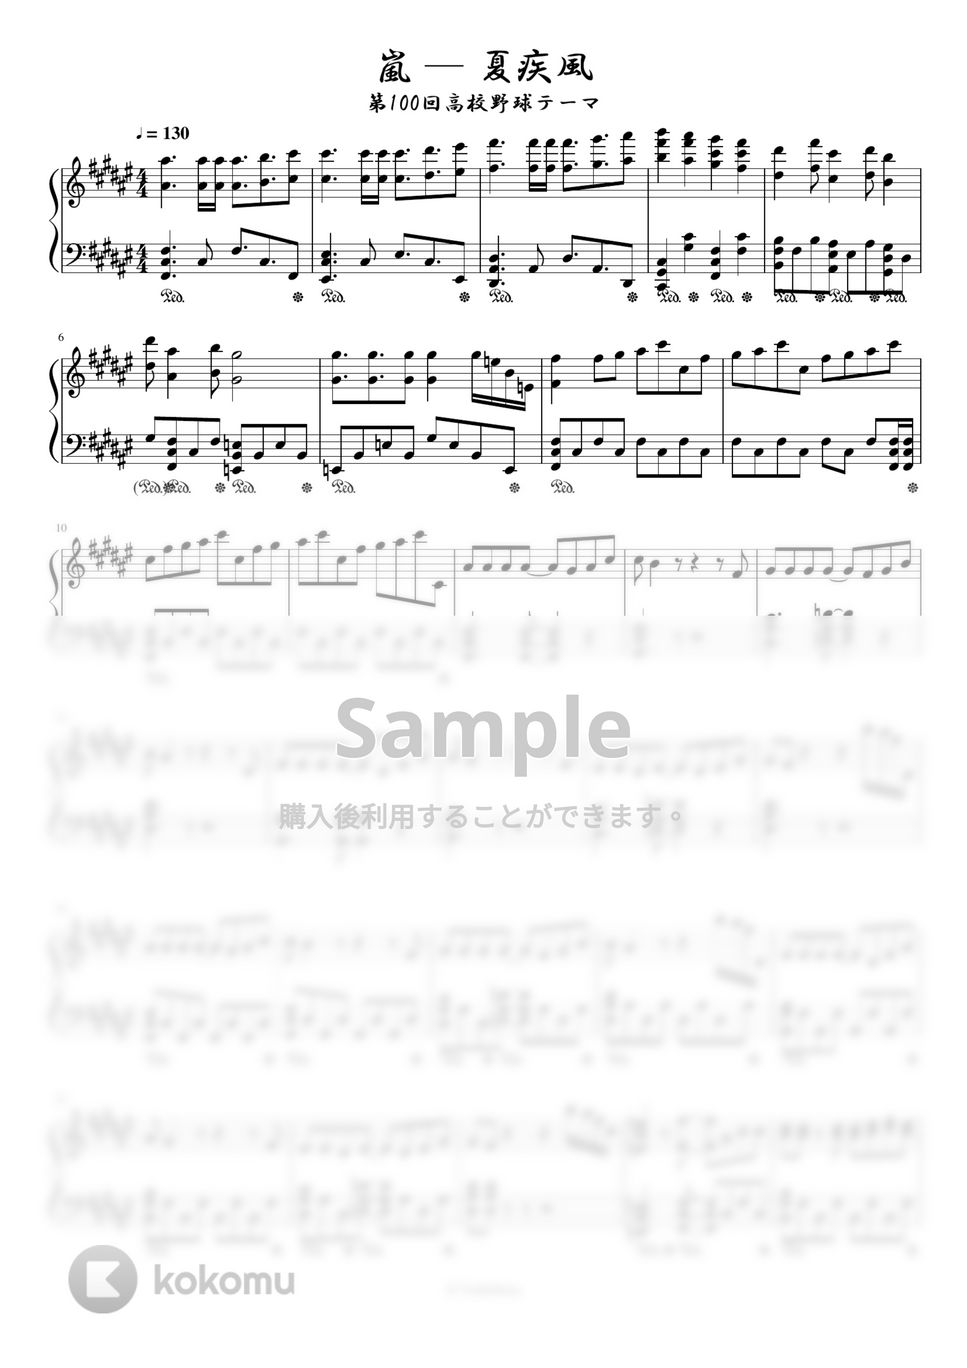 嵐 - 夏疾風 (第100回高校野球テーマ) 楽譜 by Trohishima